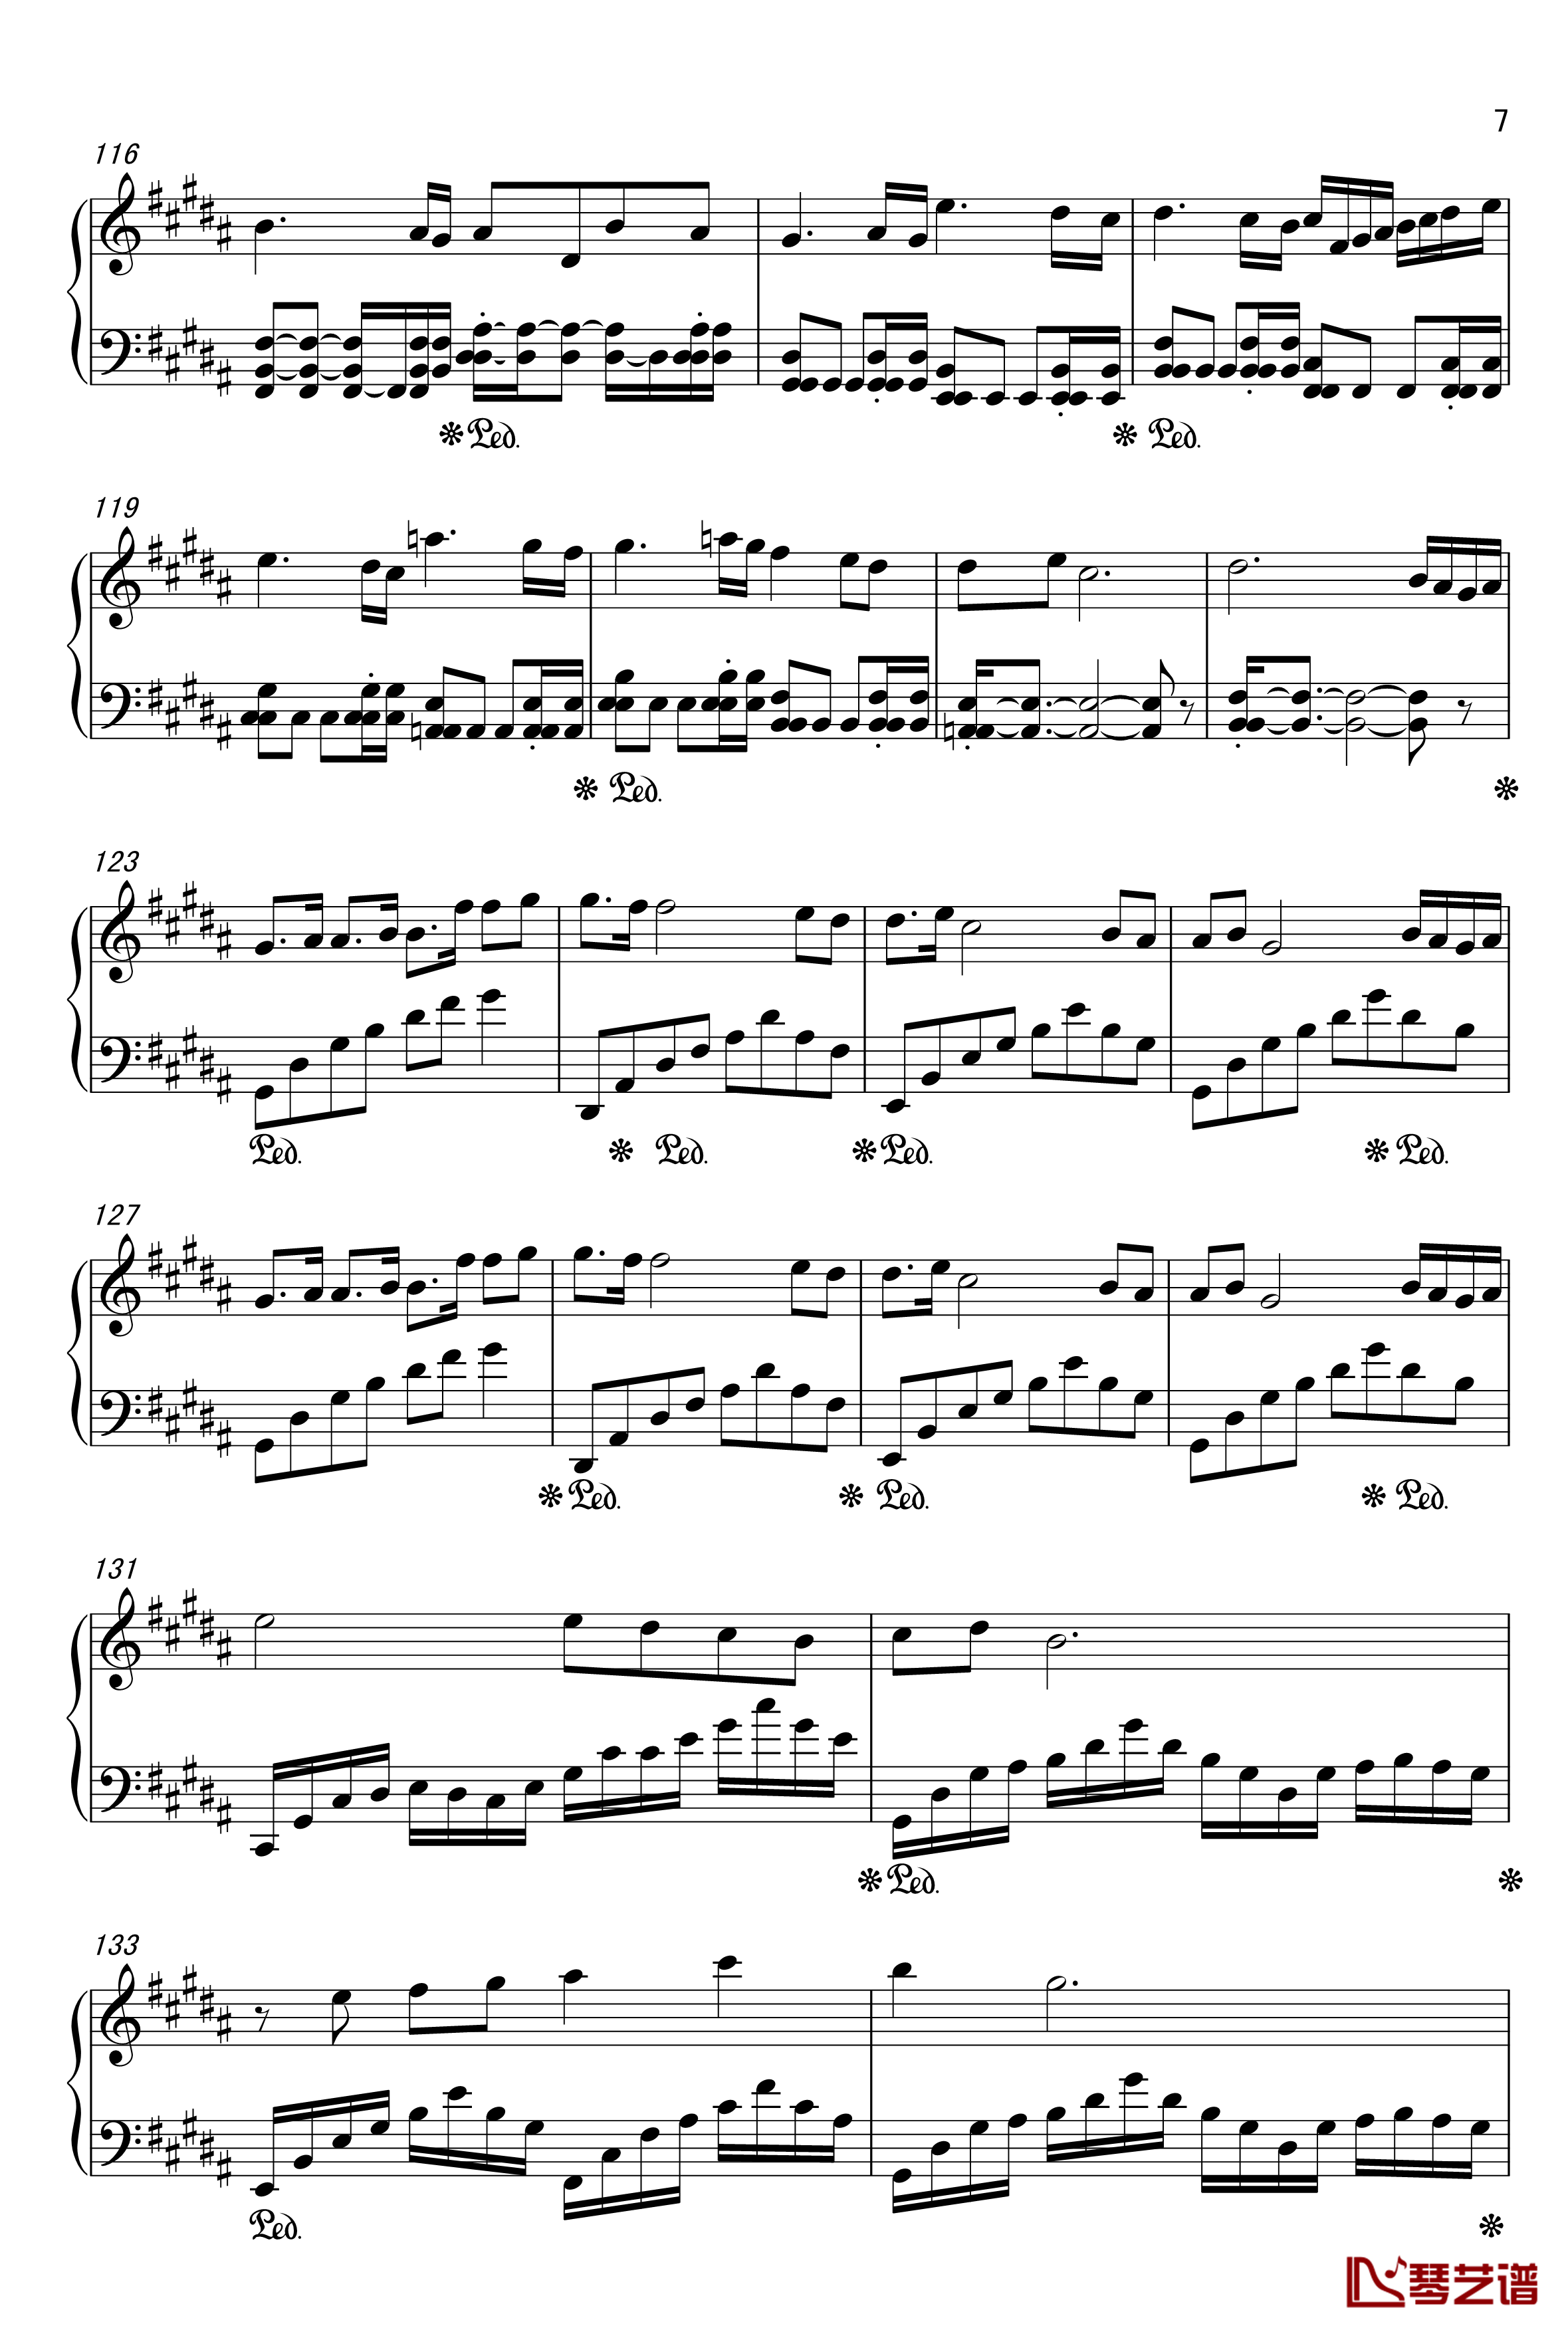 亡灵序曲钢琴谱-完美版-魔兽世界7